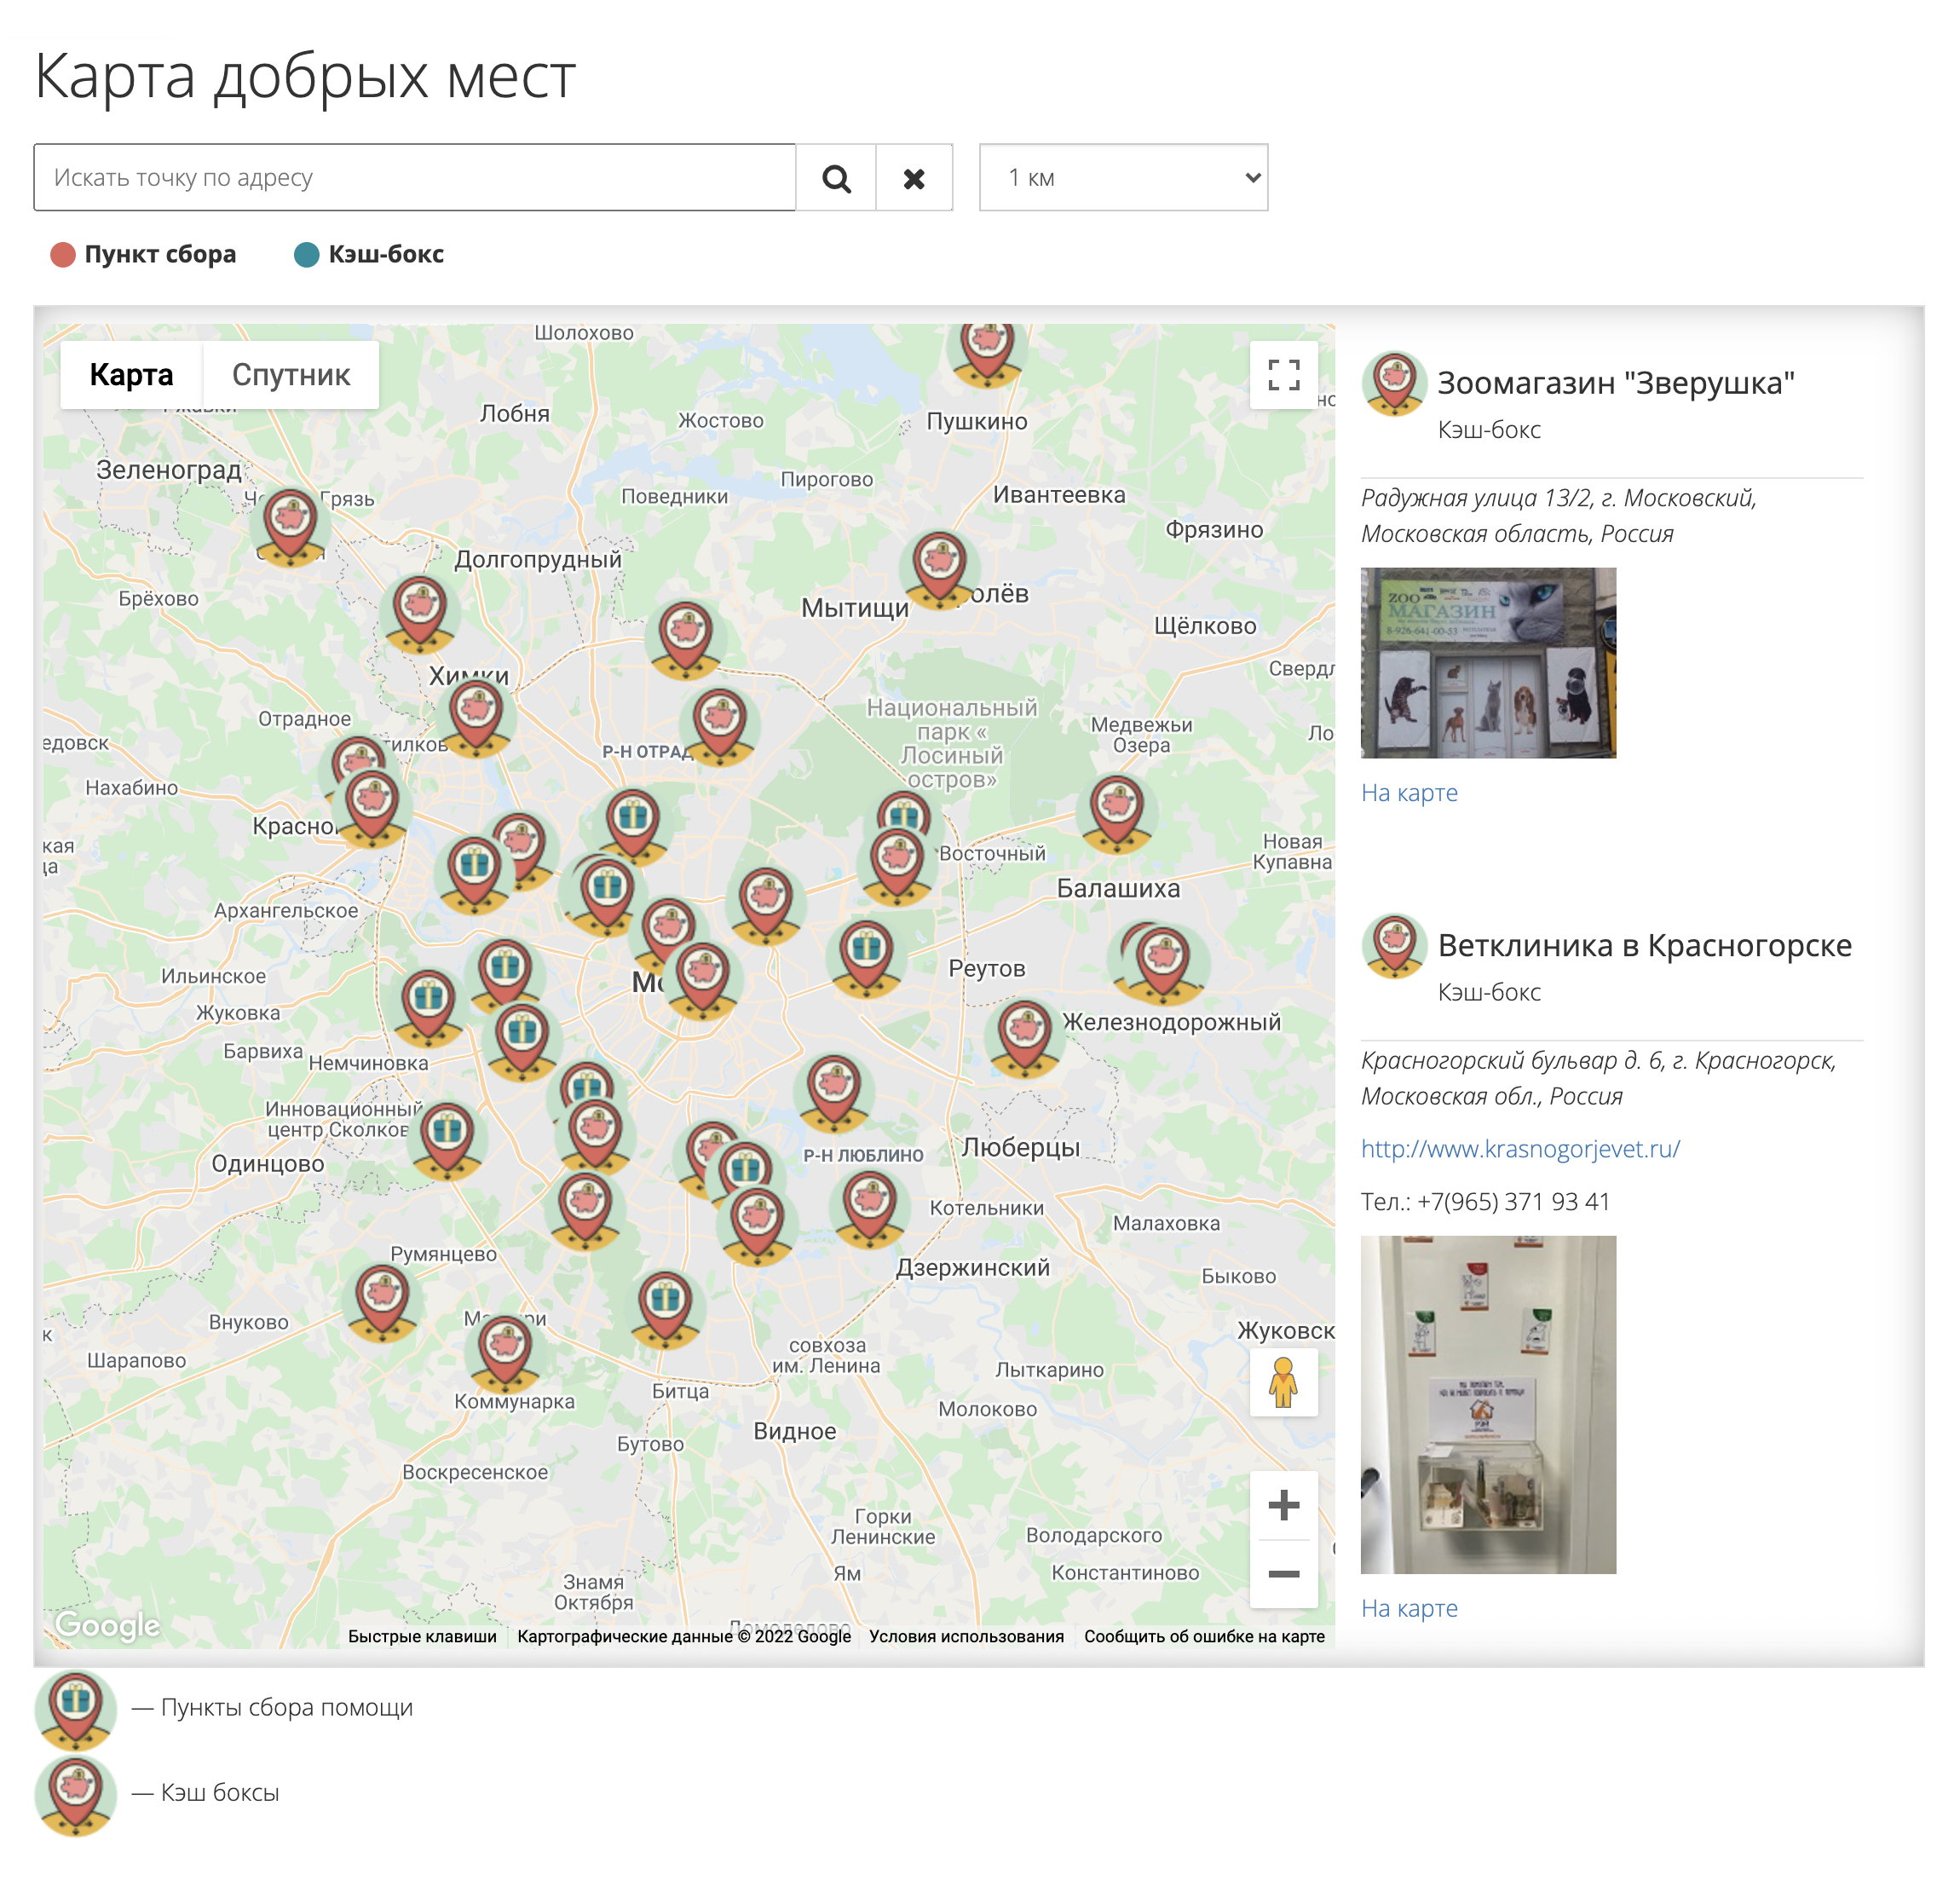 Карта мест в Москве и Подмосковье, куда можно сдать корма и вещи для животных из приюта